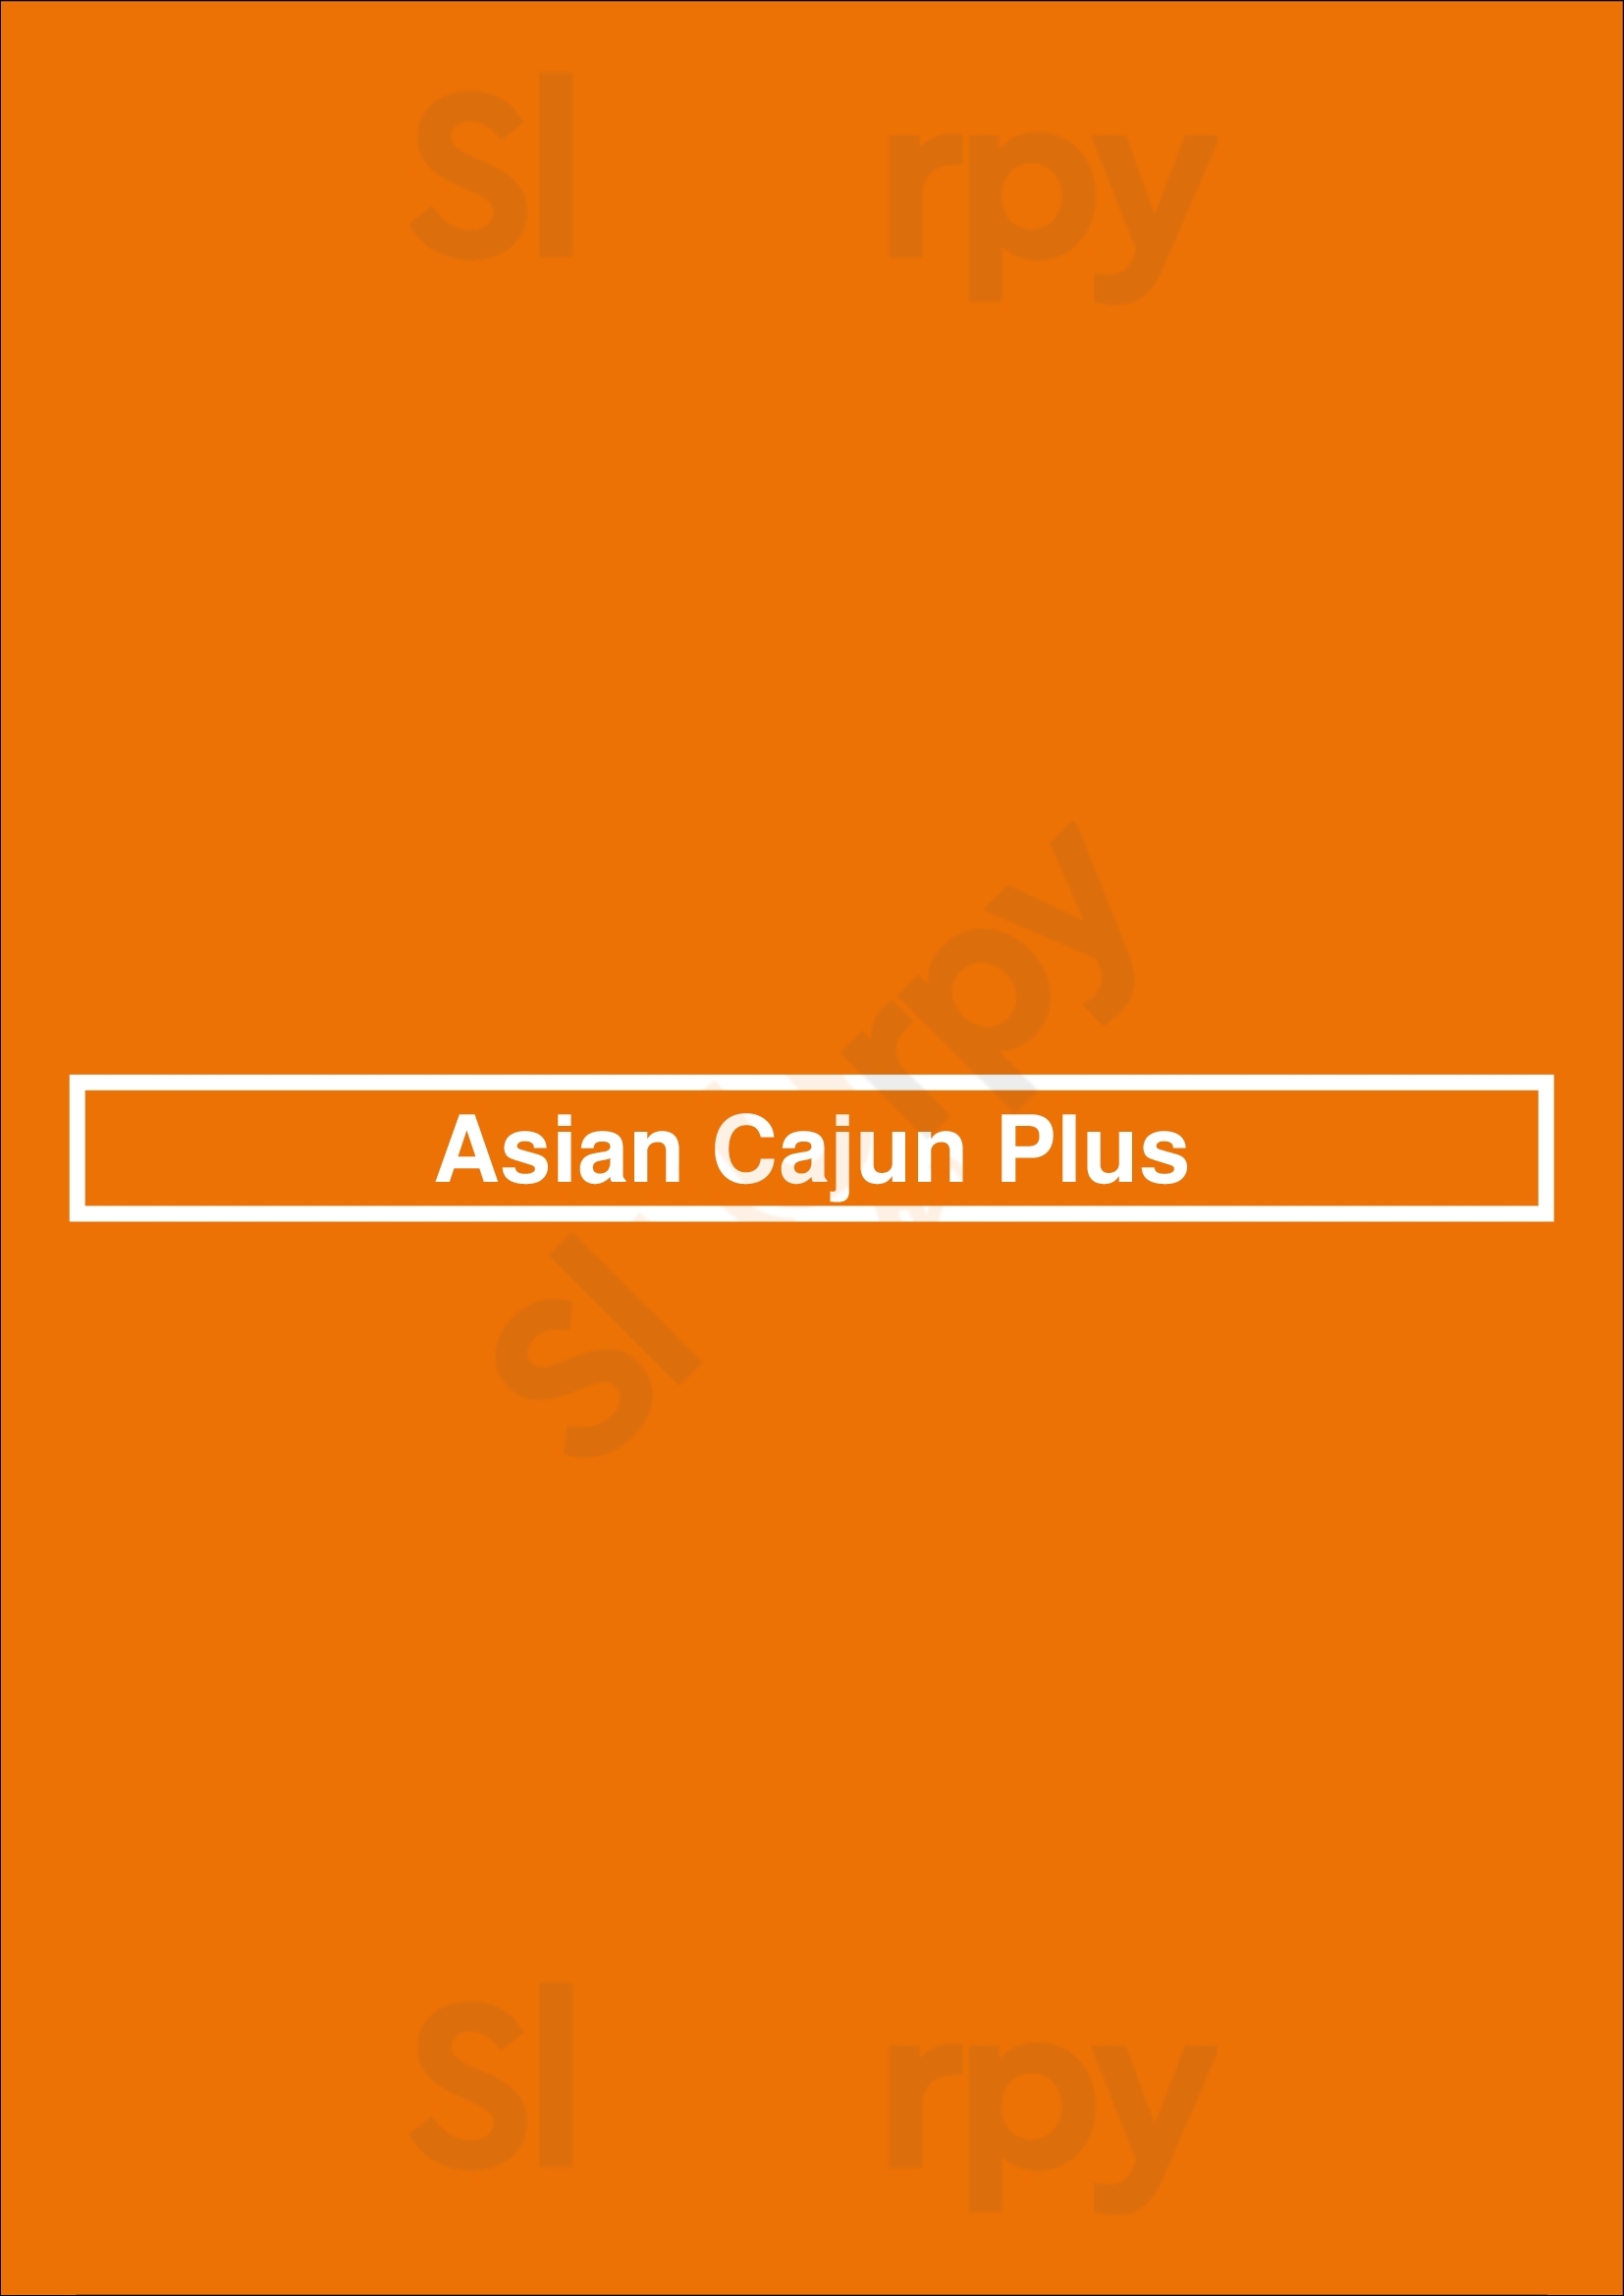 Asian Cajun Plus Chicago Menu - 1